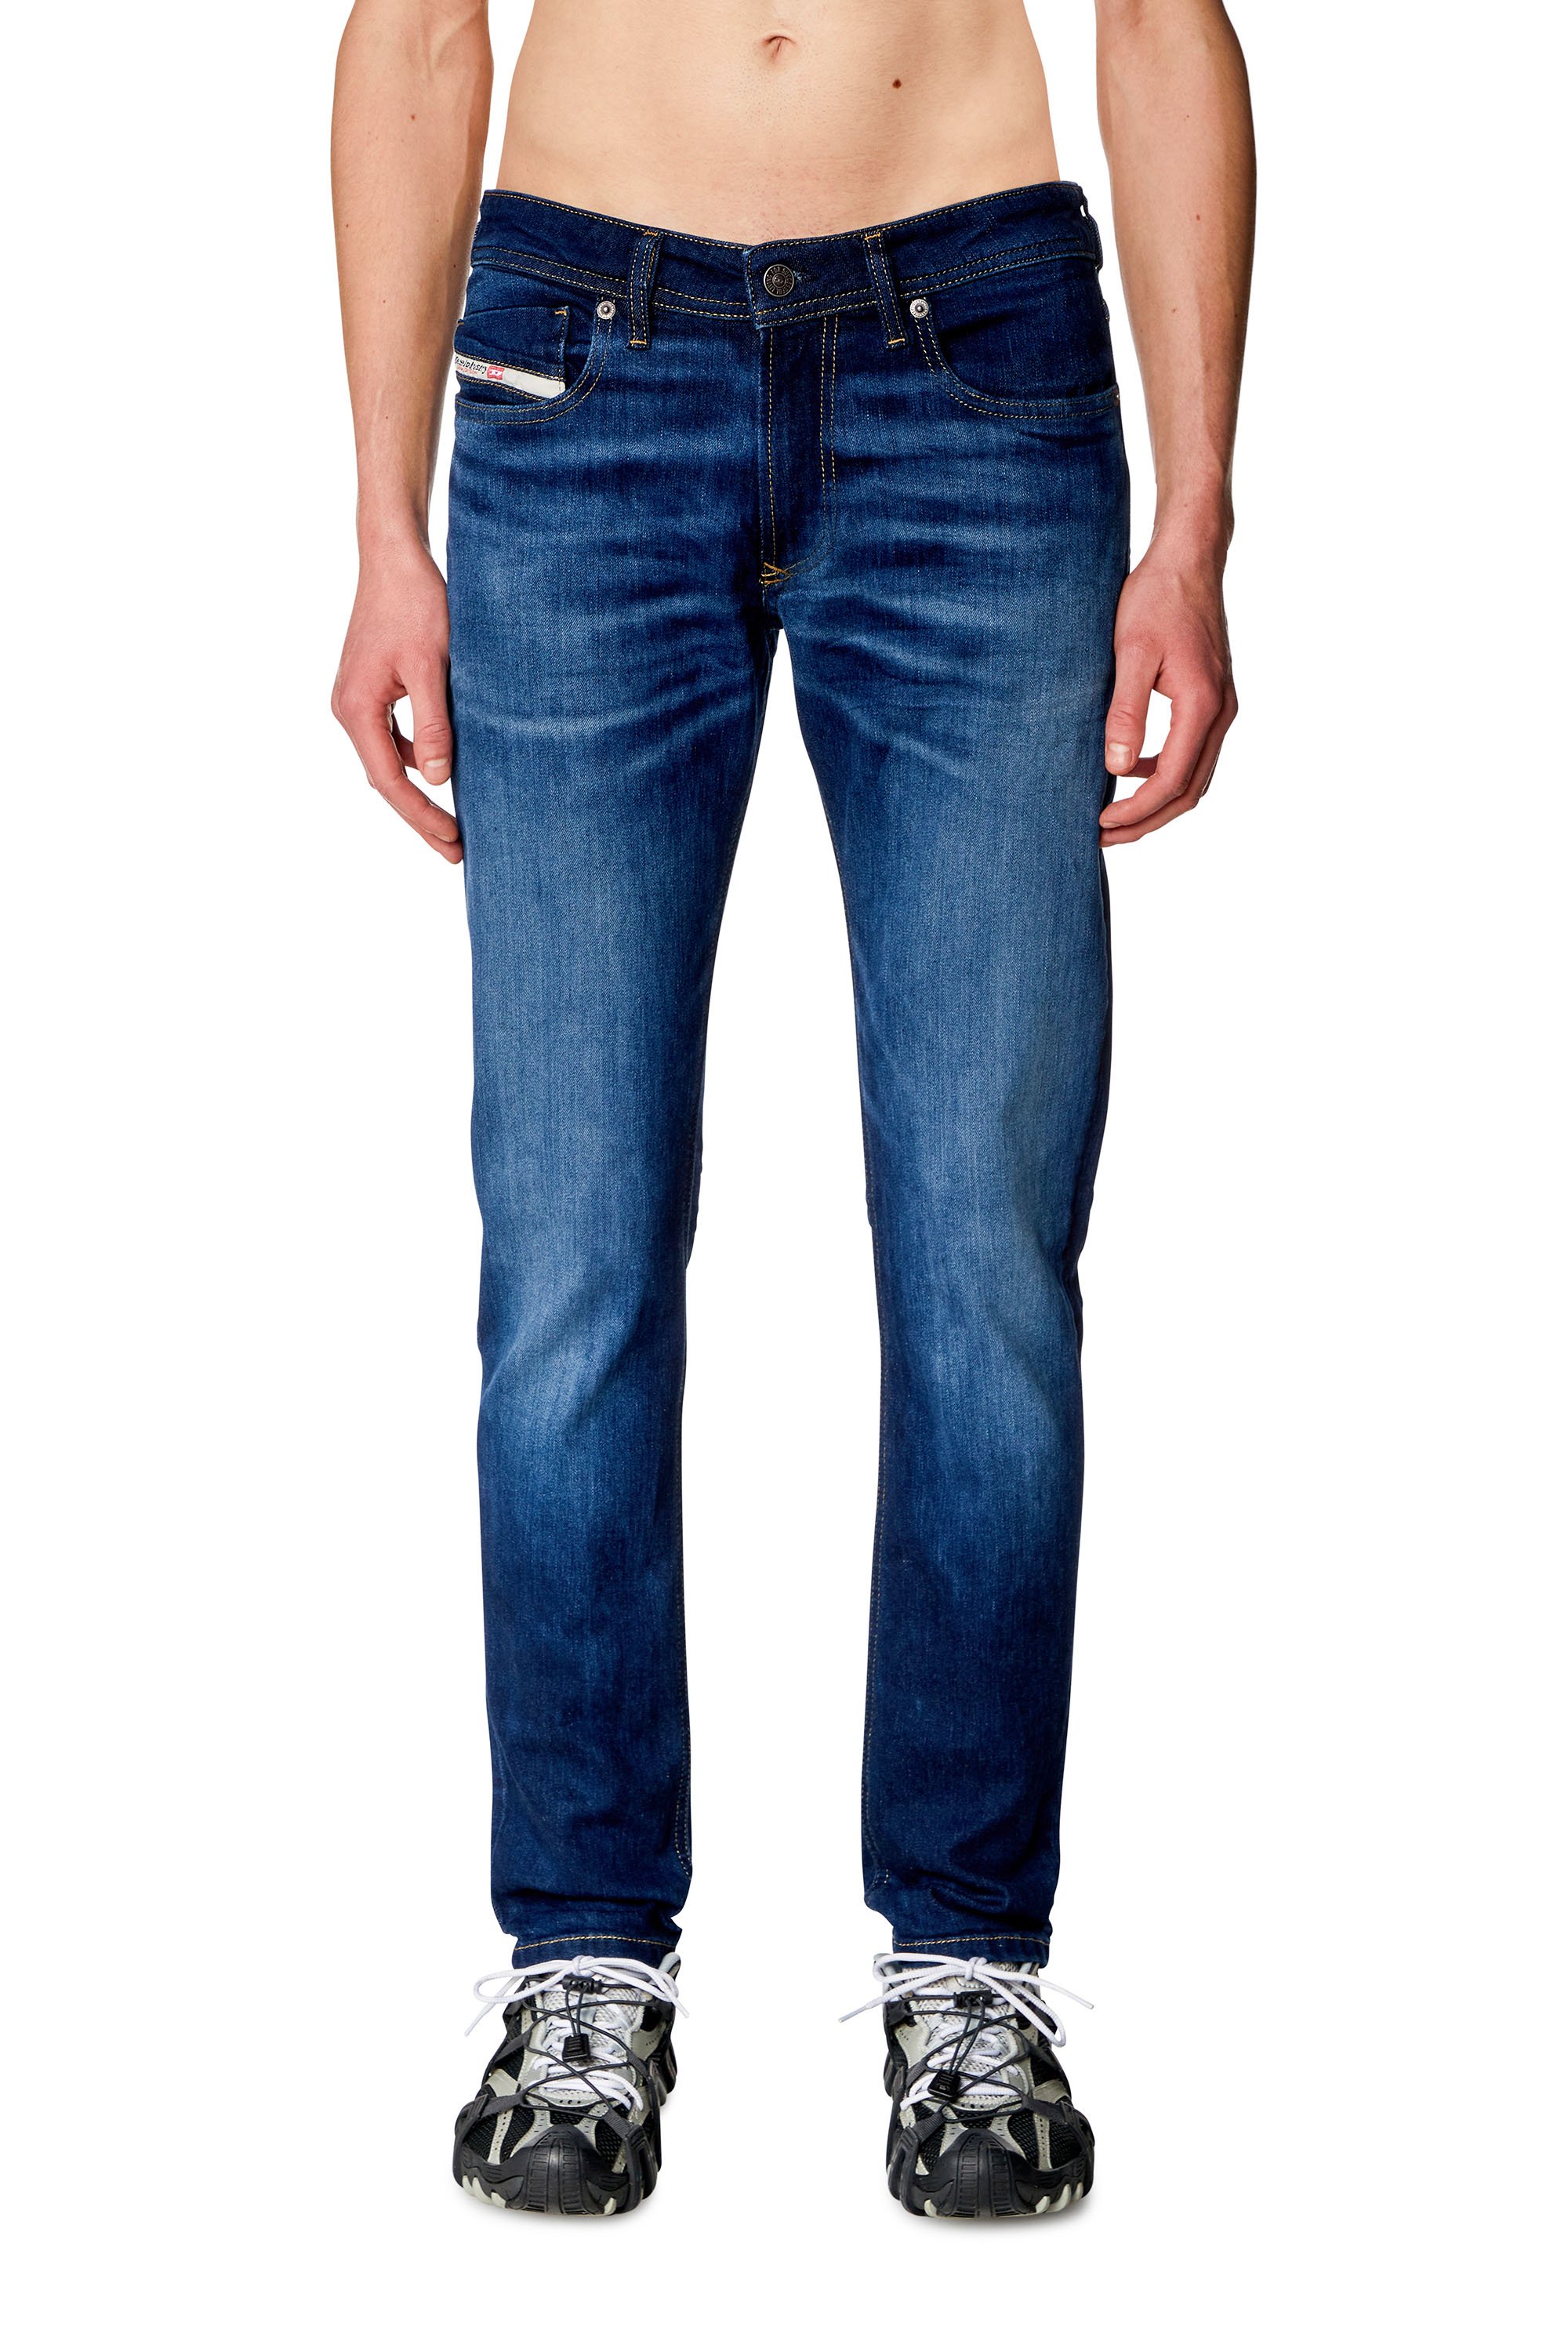 Diesel - Skinny Jeans - 1979 Sleenker - Vaqueros - Hombre - Azul marino